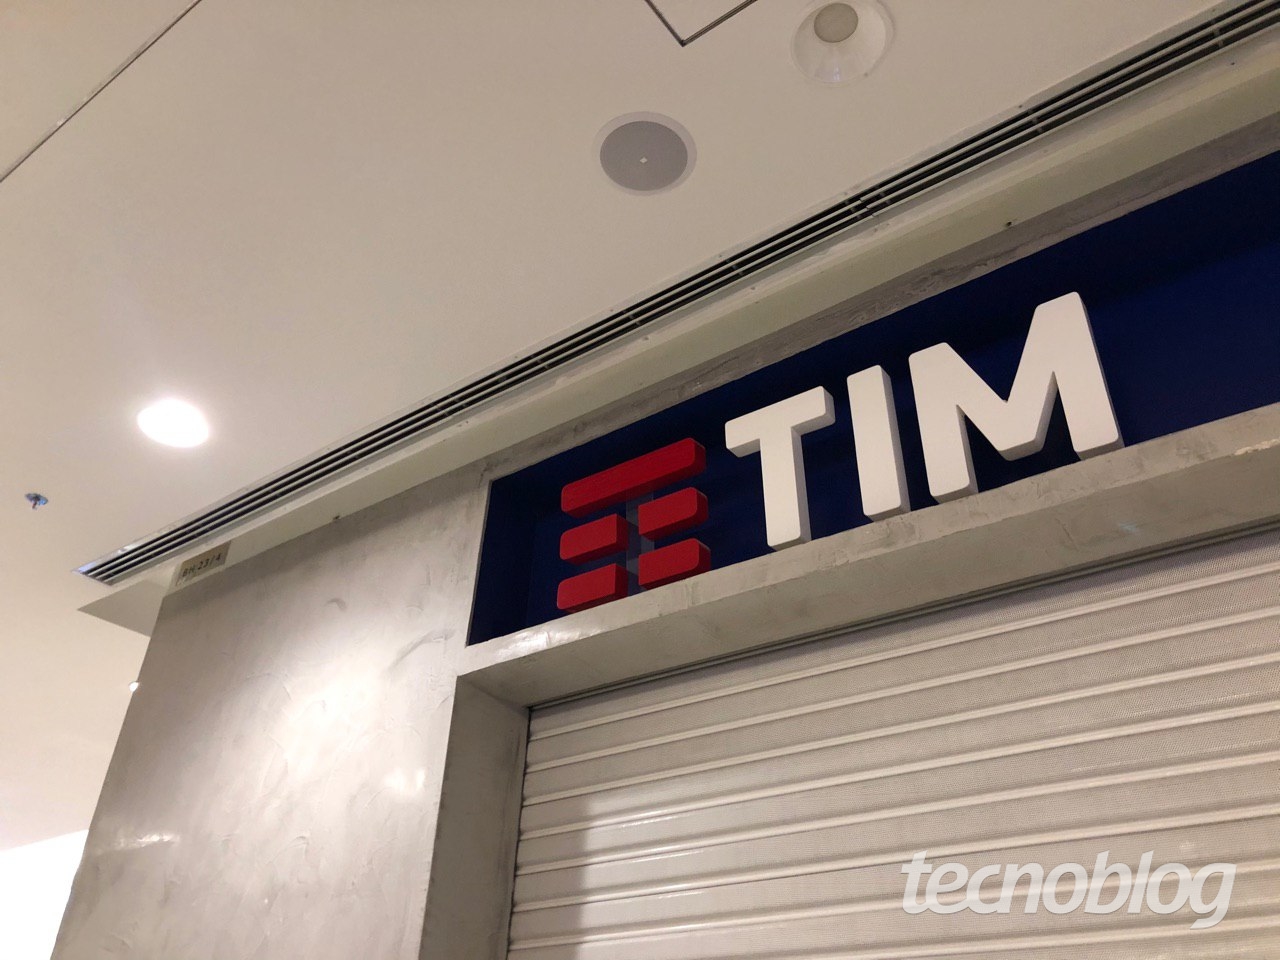 TIM Live lança planos novos de internet com 500 Mb/s e 600 Mb/s – Tecnoblog